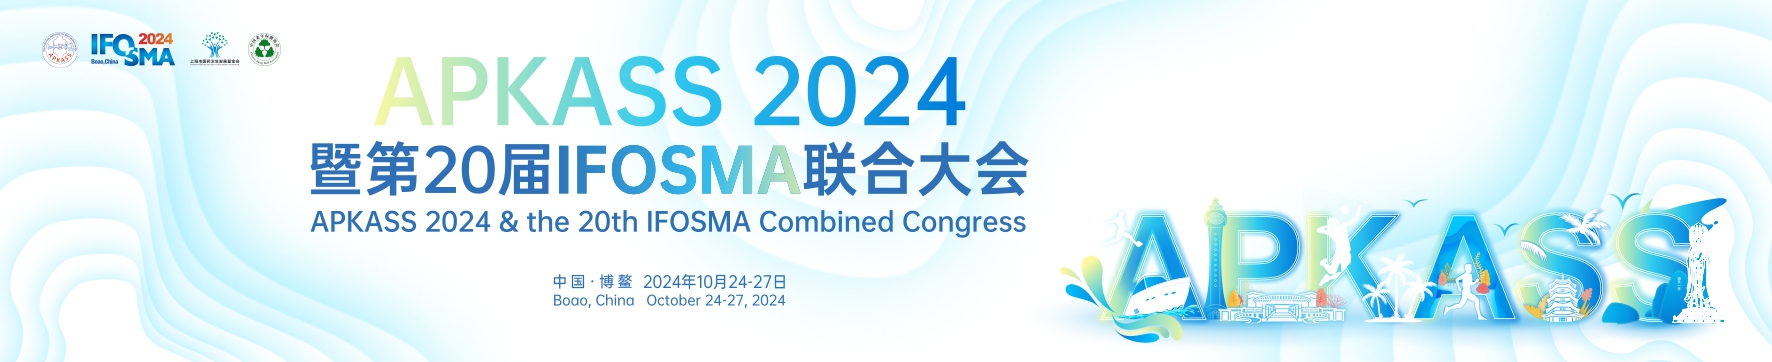 APKASS 2024暨第20届IFOSMA联合大会